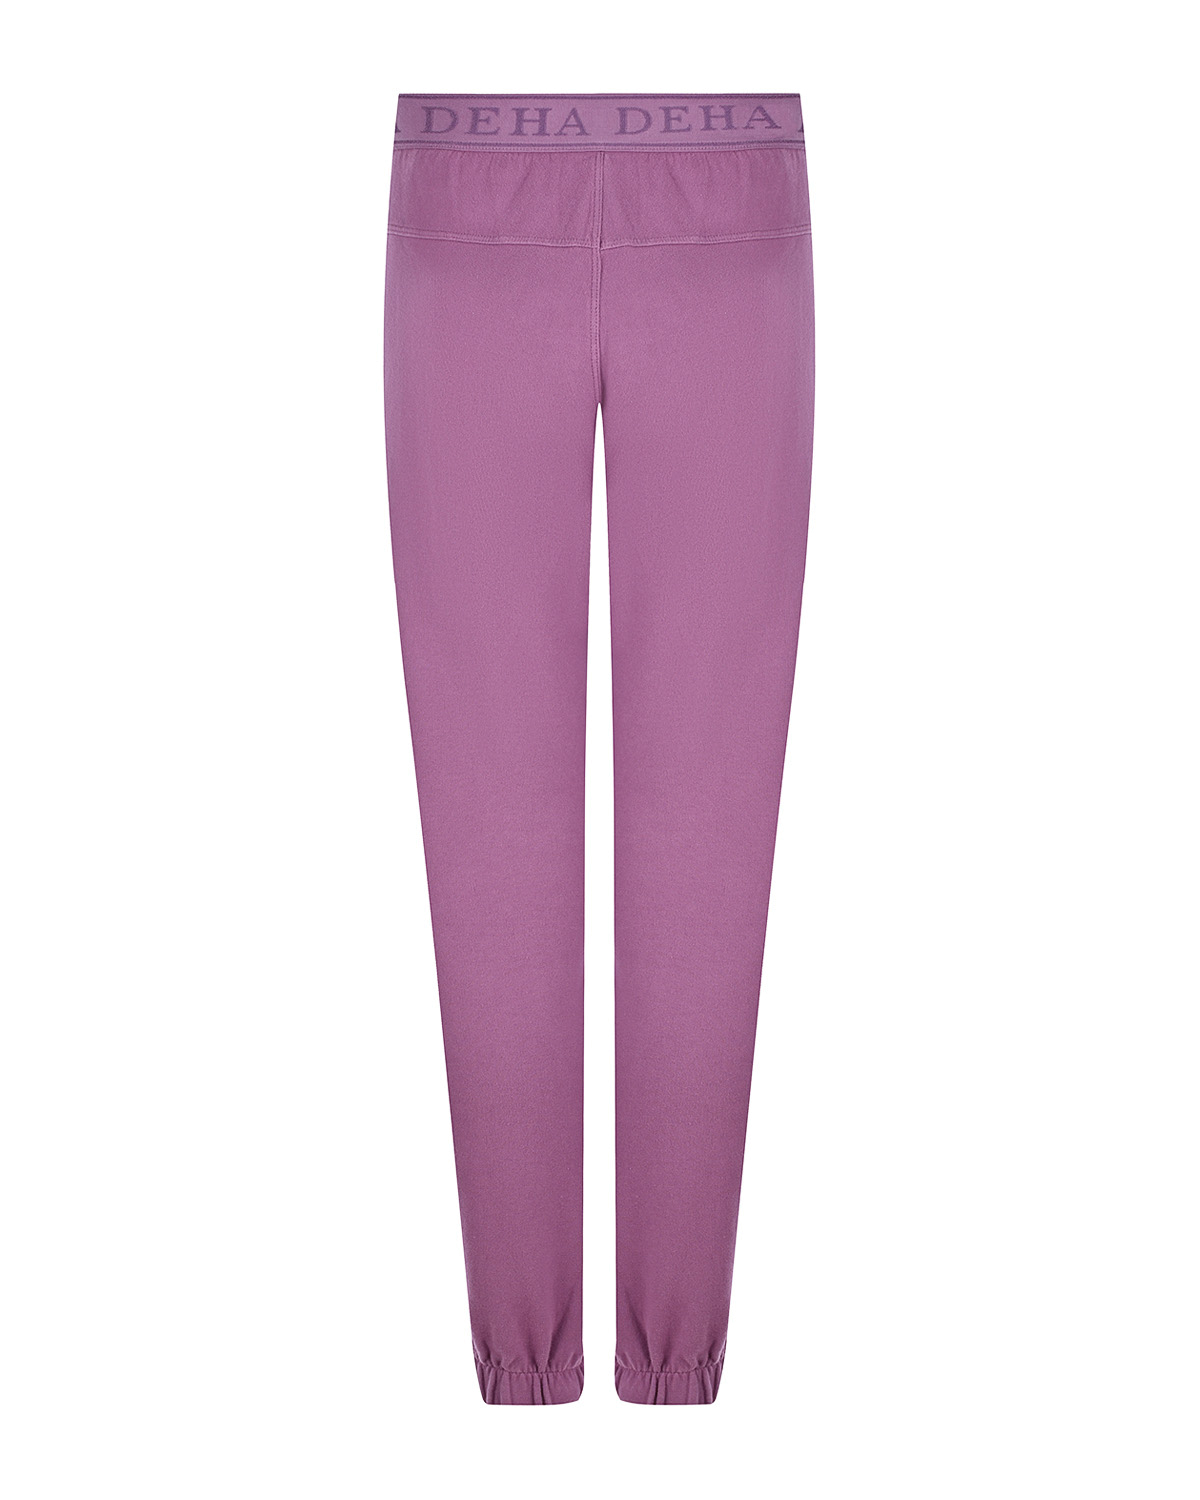 Сиреневые спортивные брюки Deha, размер 40, цвет сиреневый - фото 2